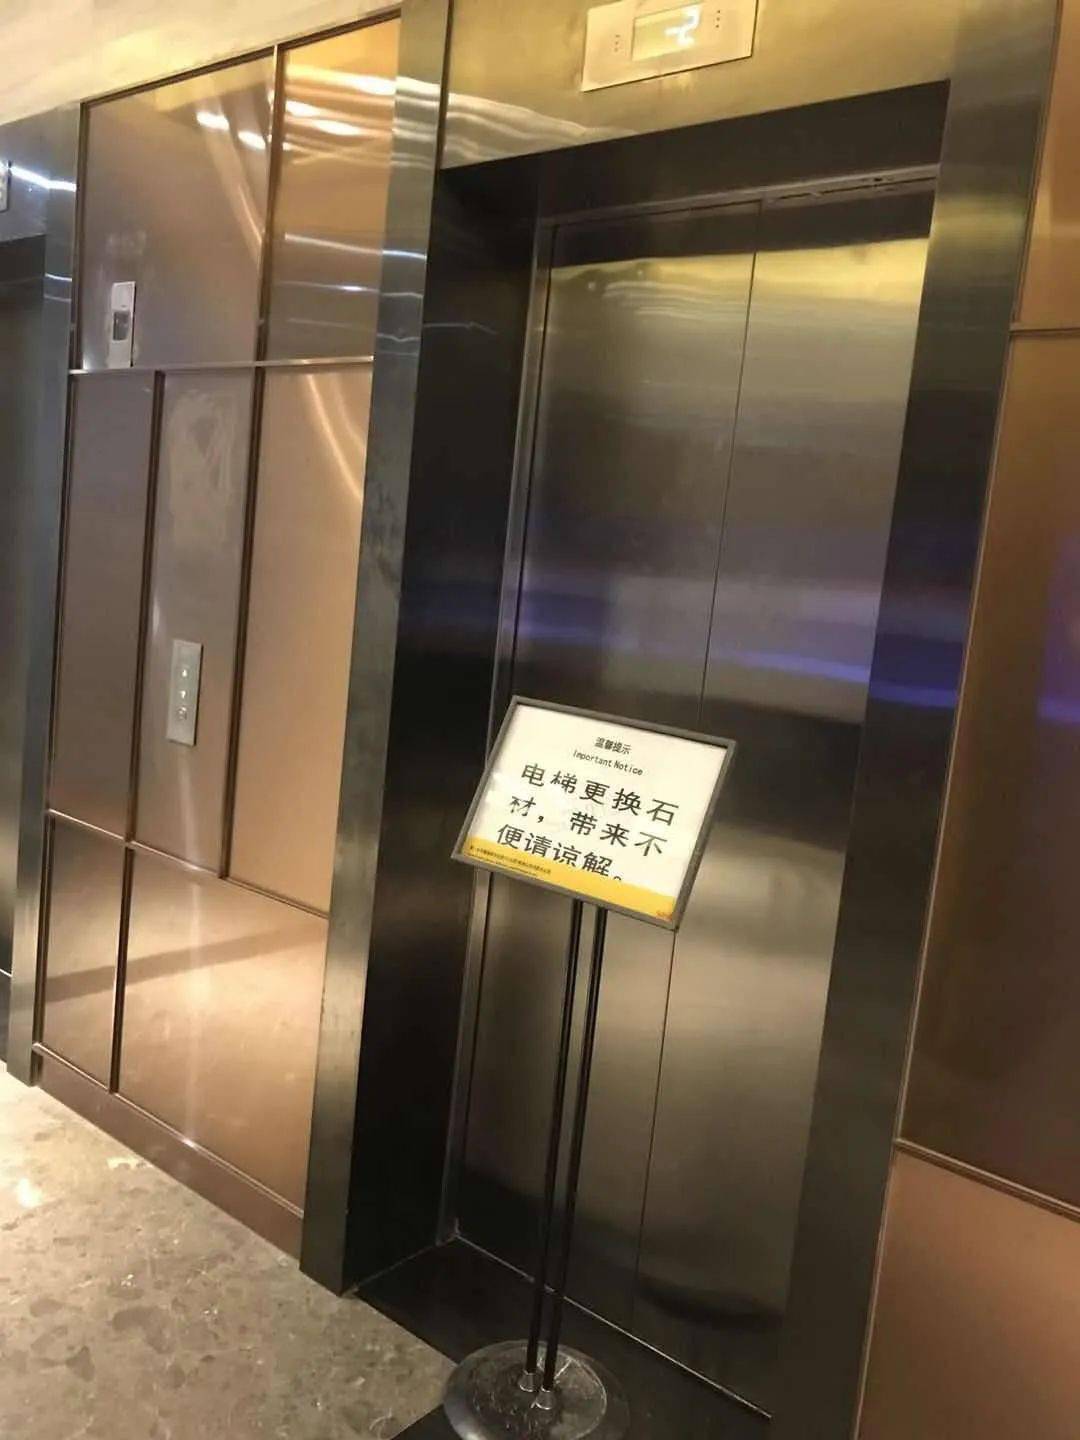 电梯坏了,需要申请维修资金应该怎么办?